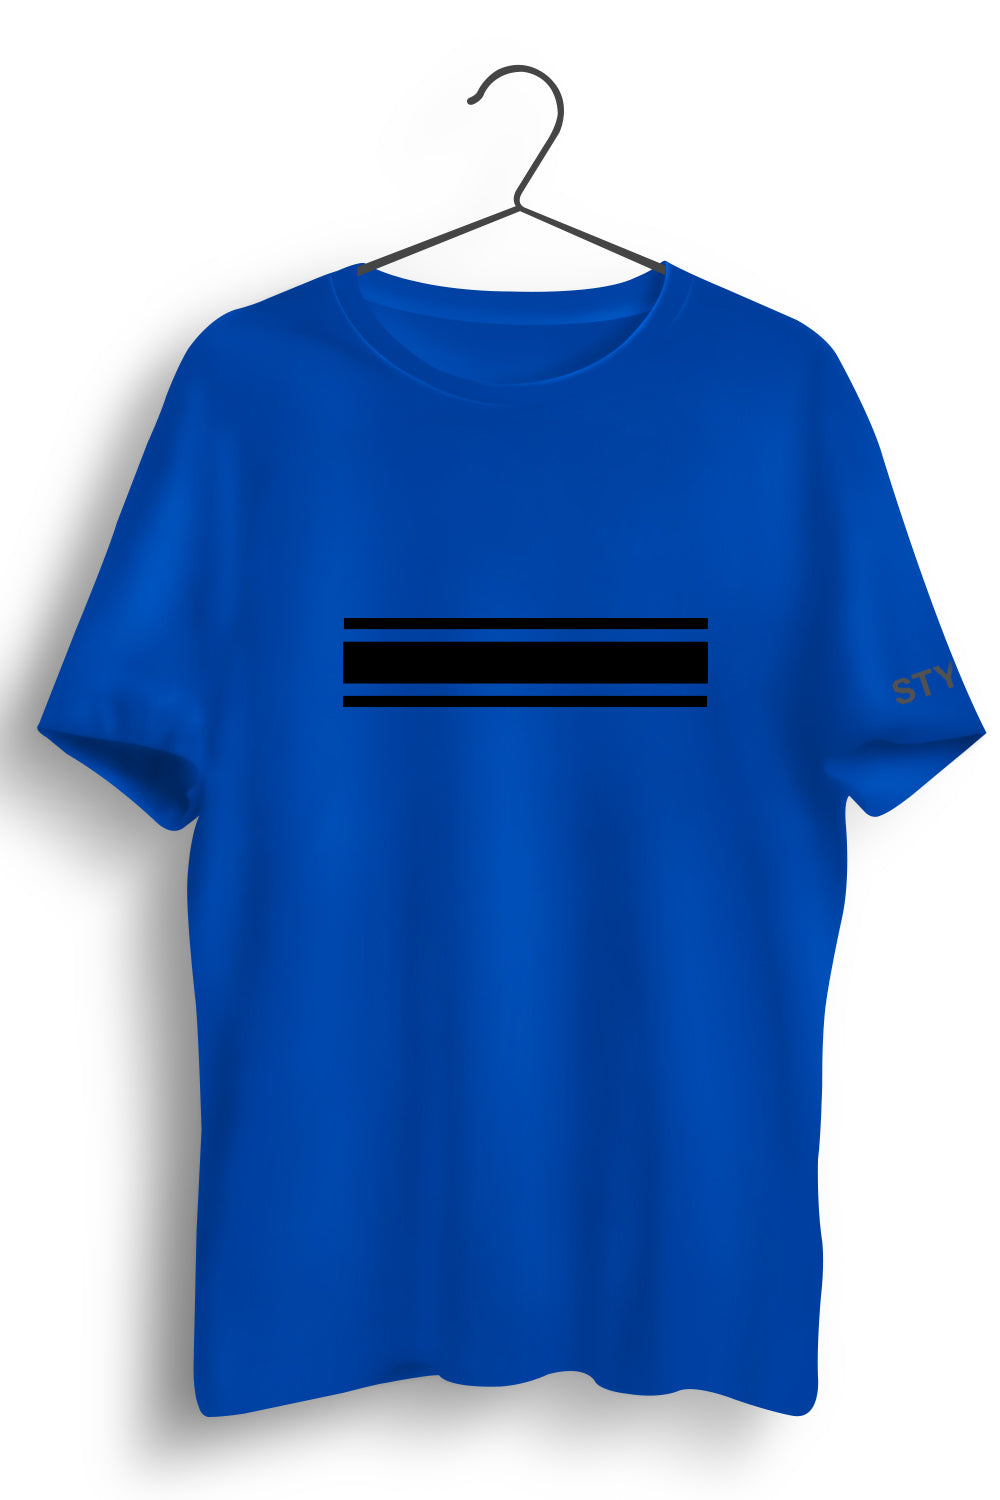 3 Stripes Graphic Printed Blue Tshirt